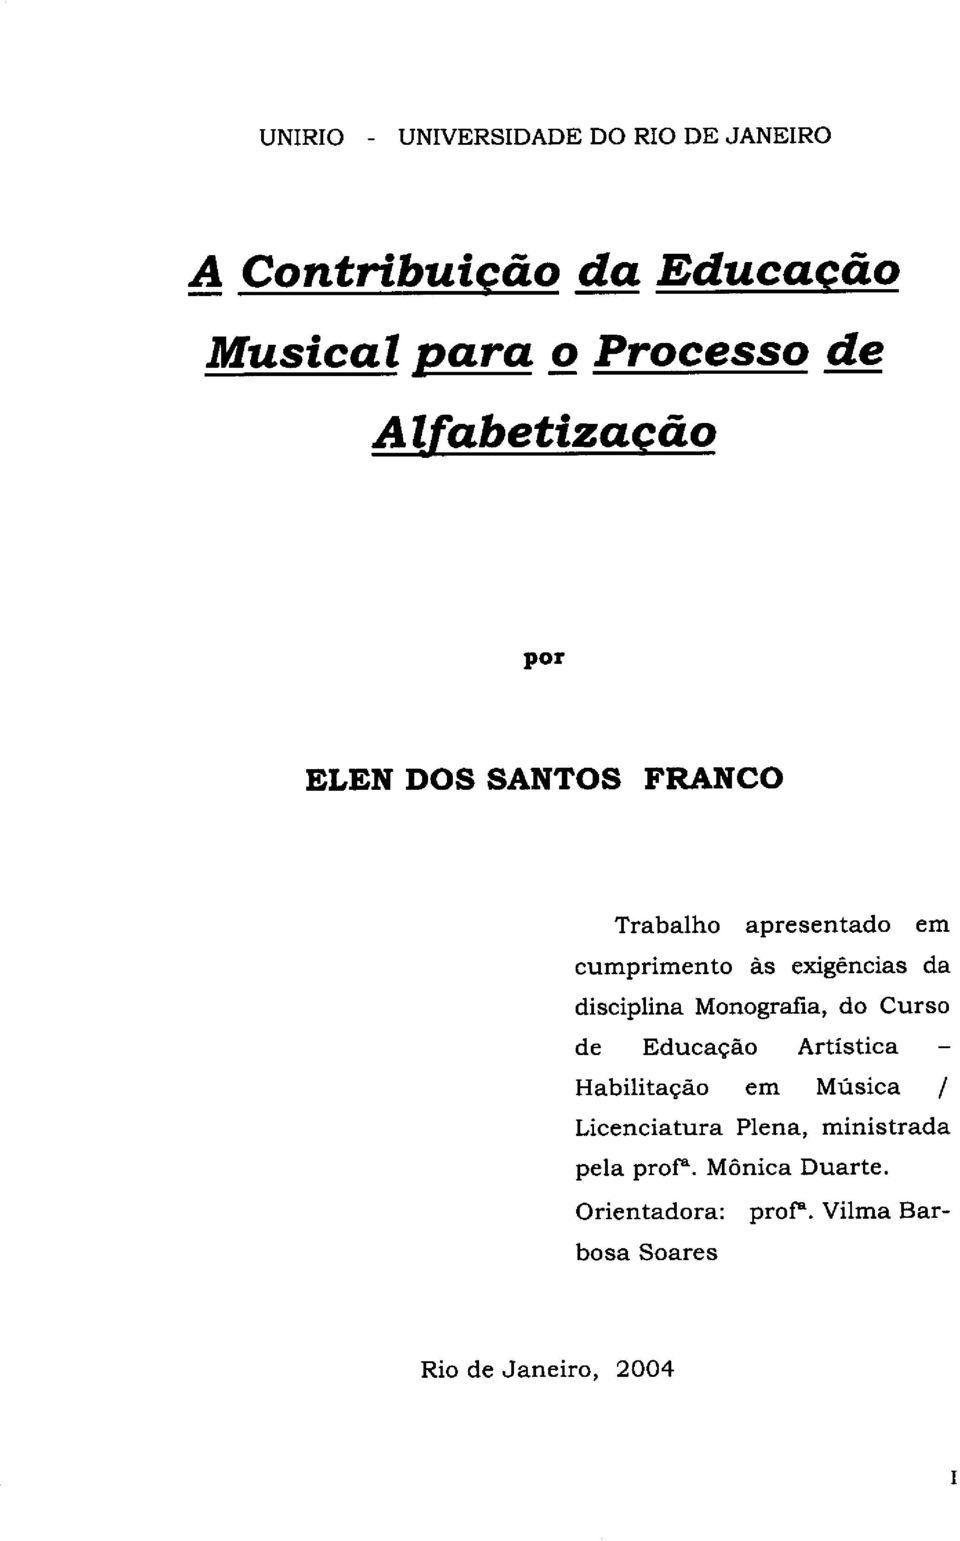 disciplina Monografia, do Curso de Educagdo Artistica - Habilitagdo em Musics / Licenciatura